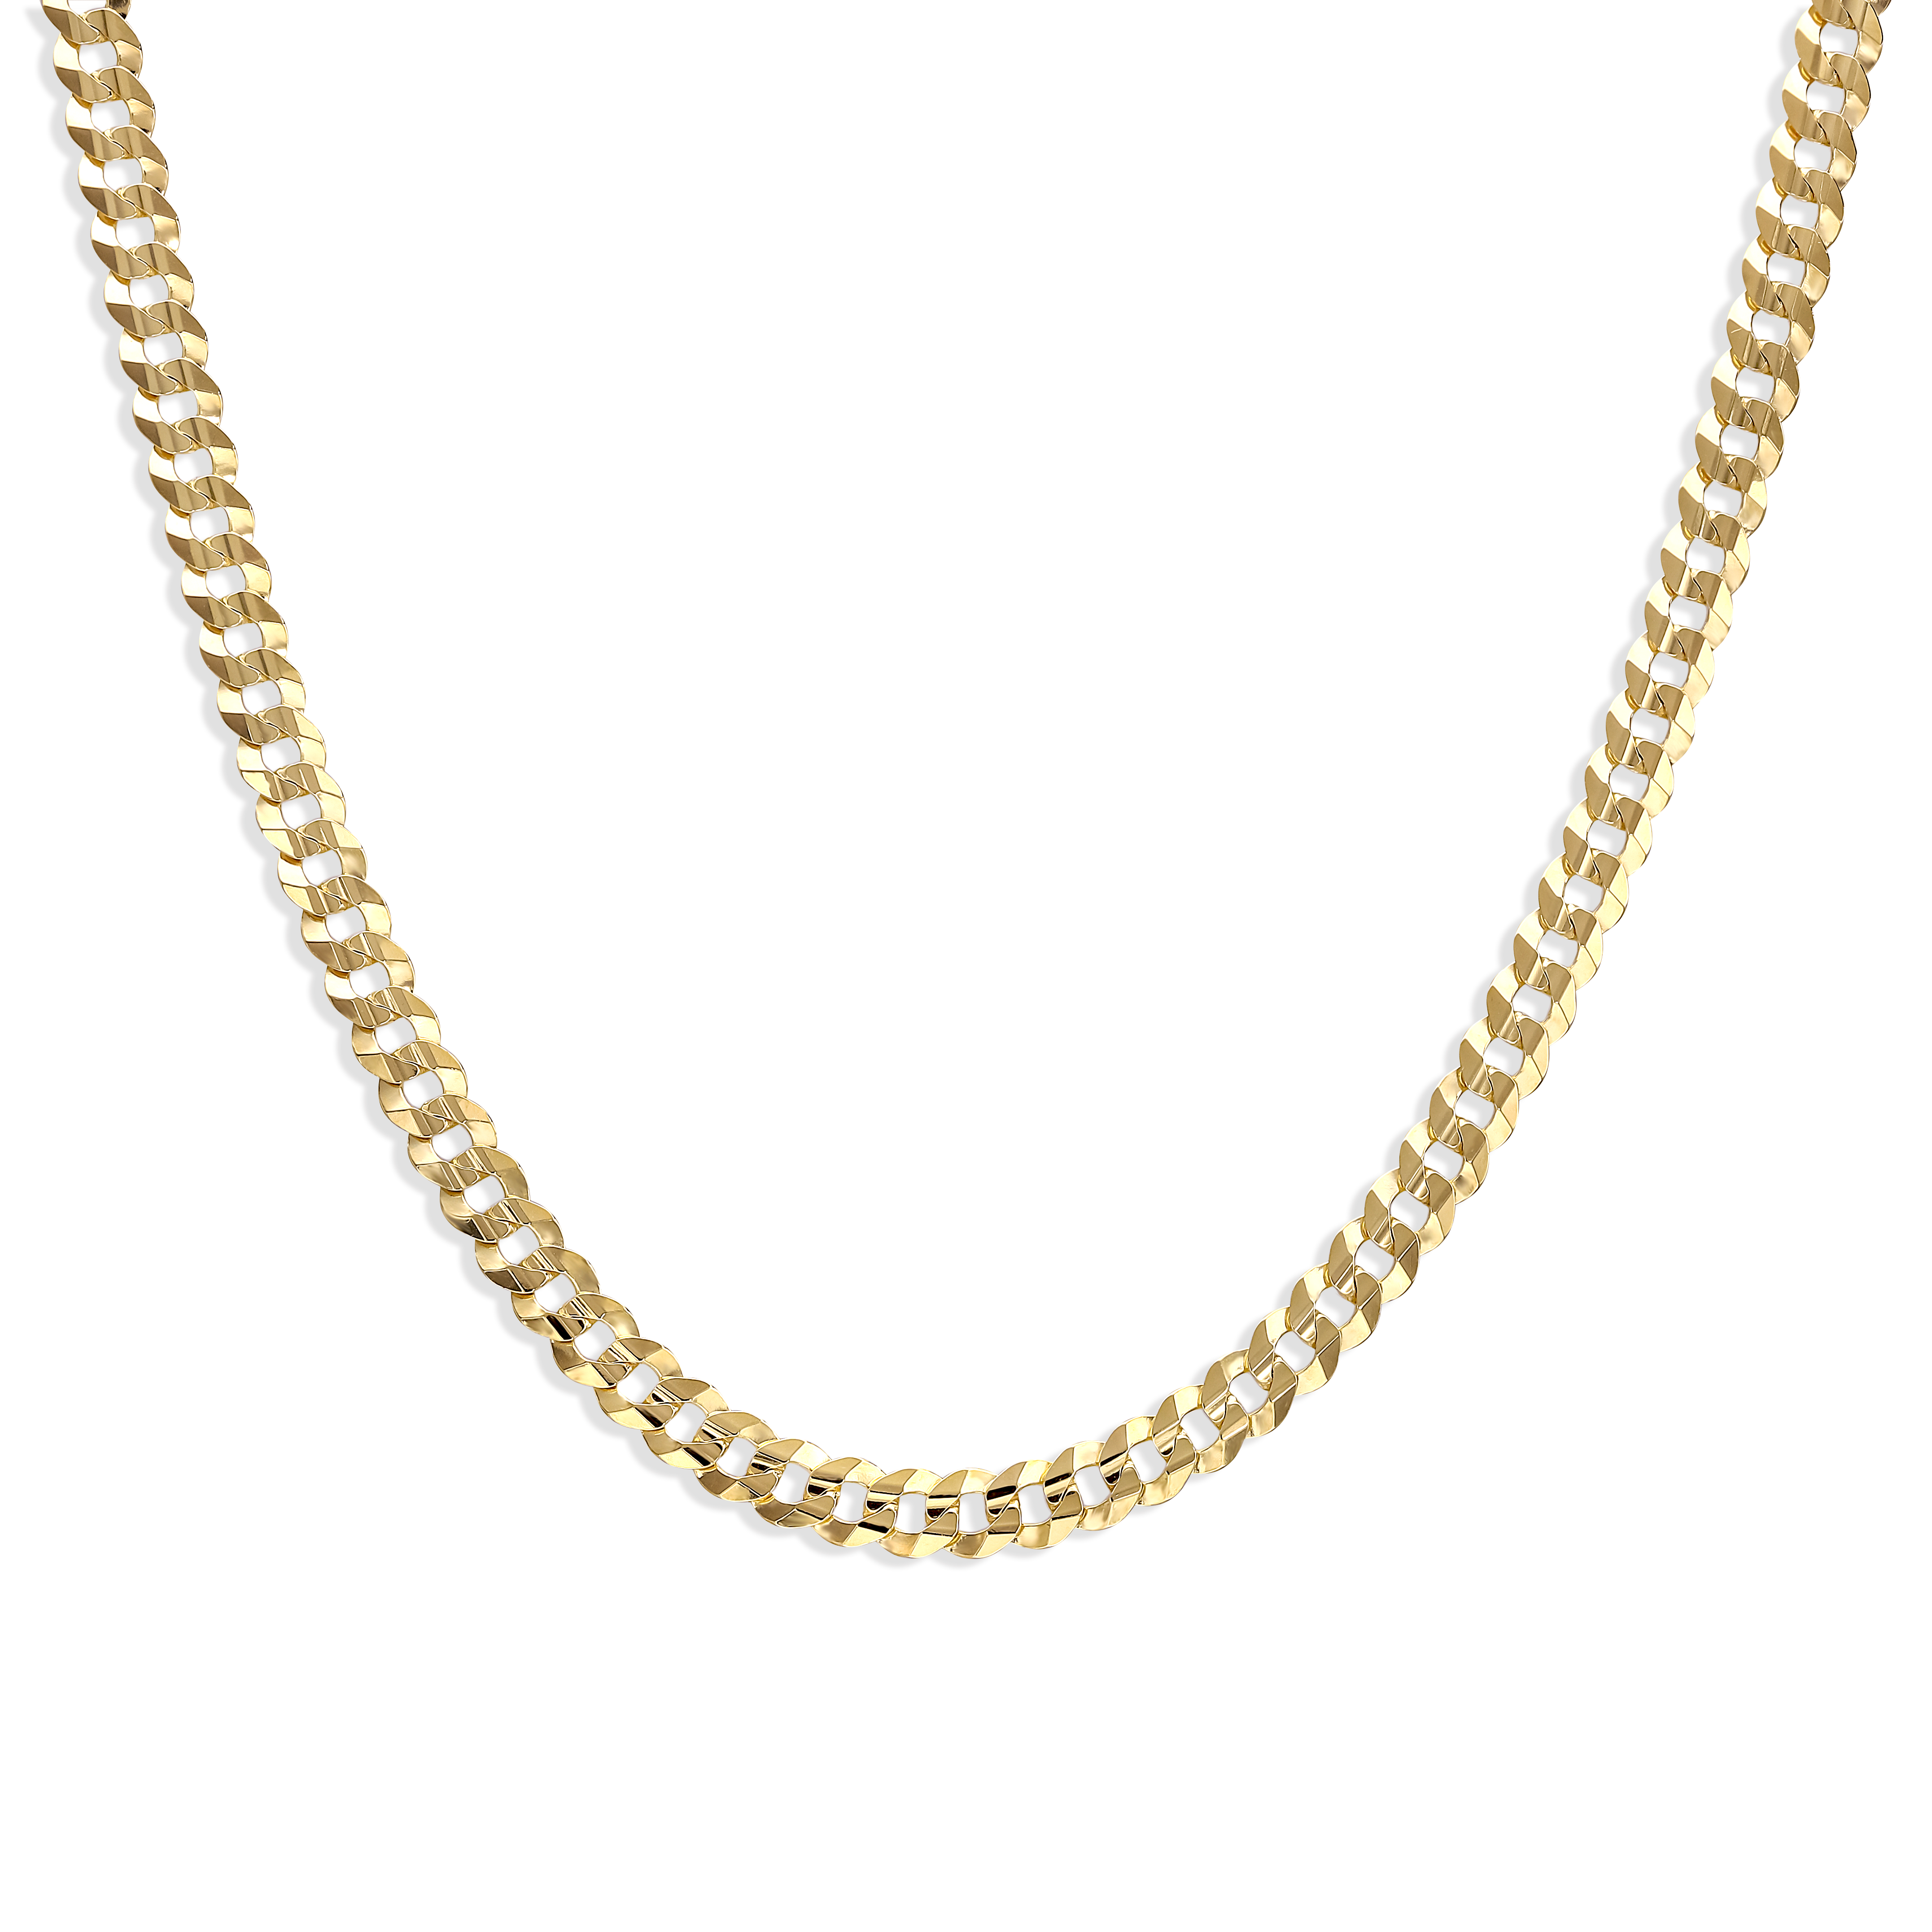 Łańcuch złoty pancerka pełna z zaokrąglonymi ogniwami, szerokość 5 mm, długość 50 cm, próba 585